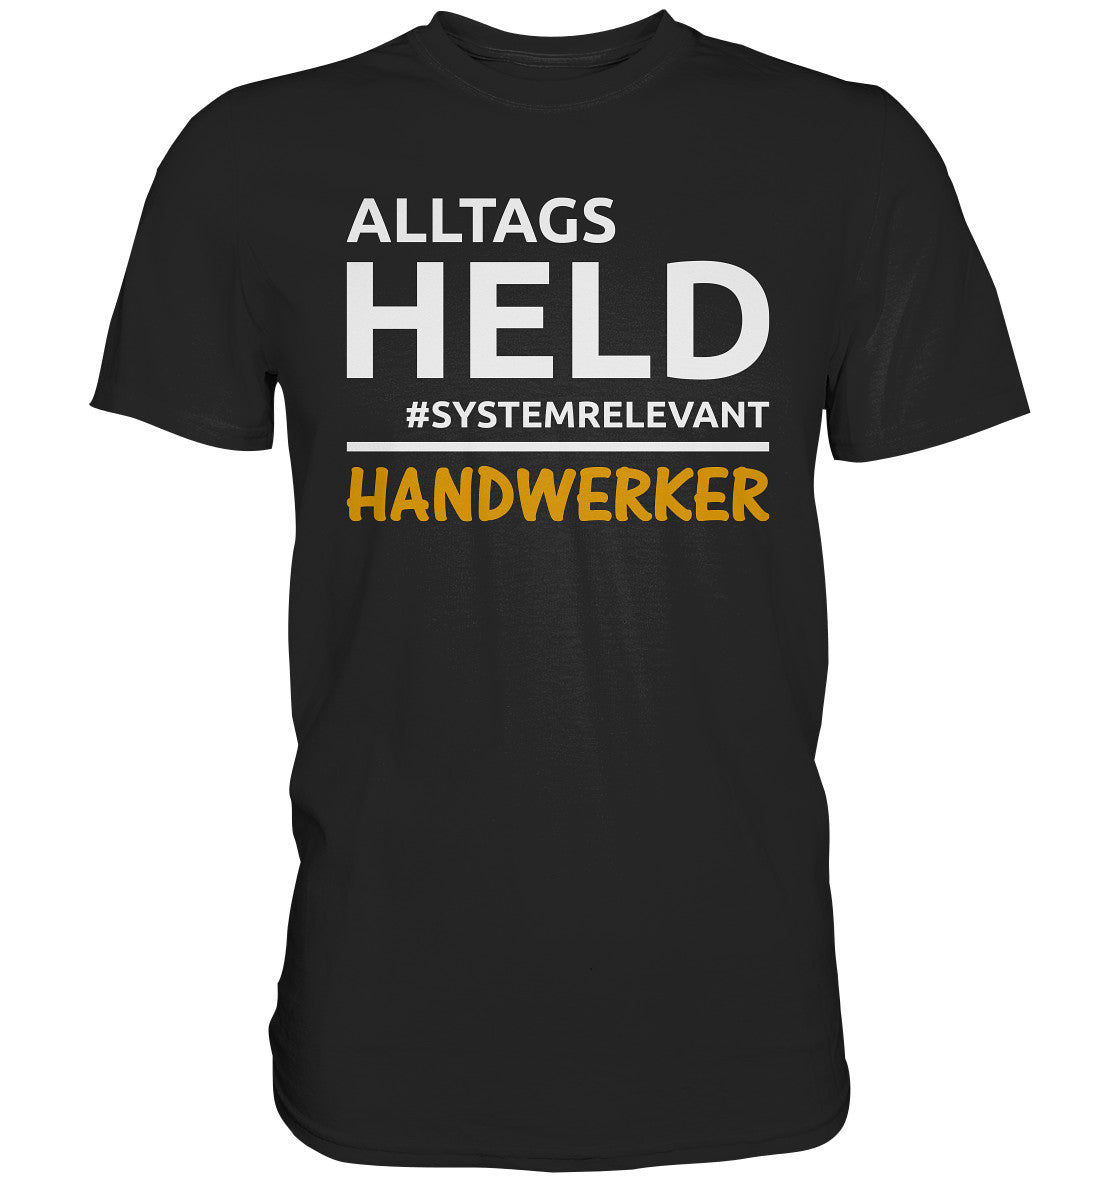 Alltagsheld Handwerker - Premium Shirt